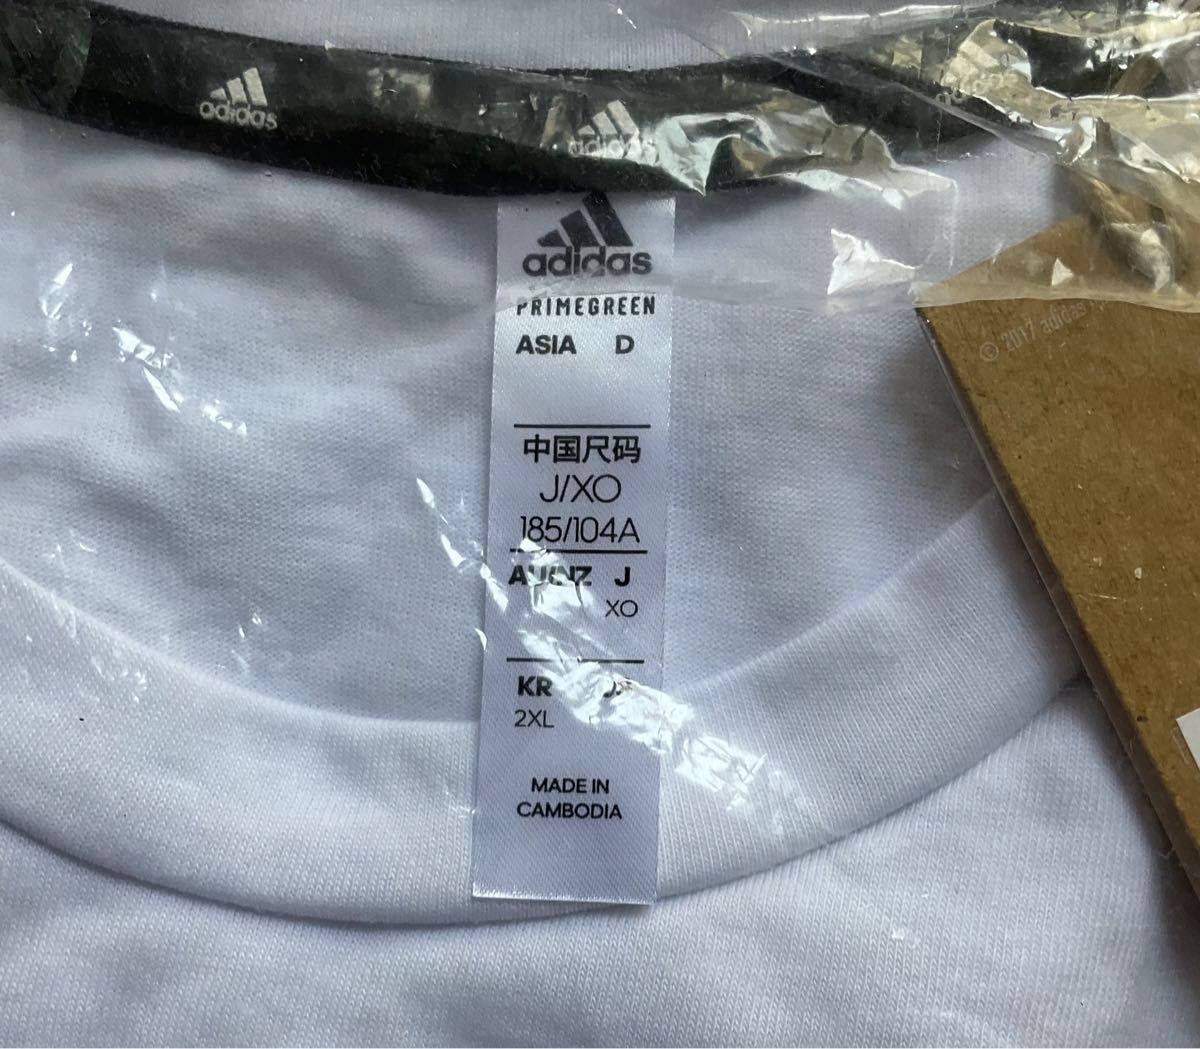 アディダス ADIDAS 新品 メンズ 吸汗速乾 ドライ カジュアル 半袖 Tシャツ 白 XXLサイズ